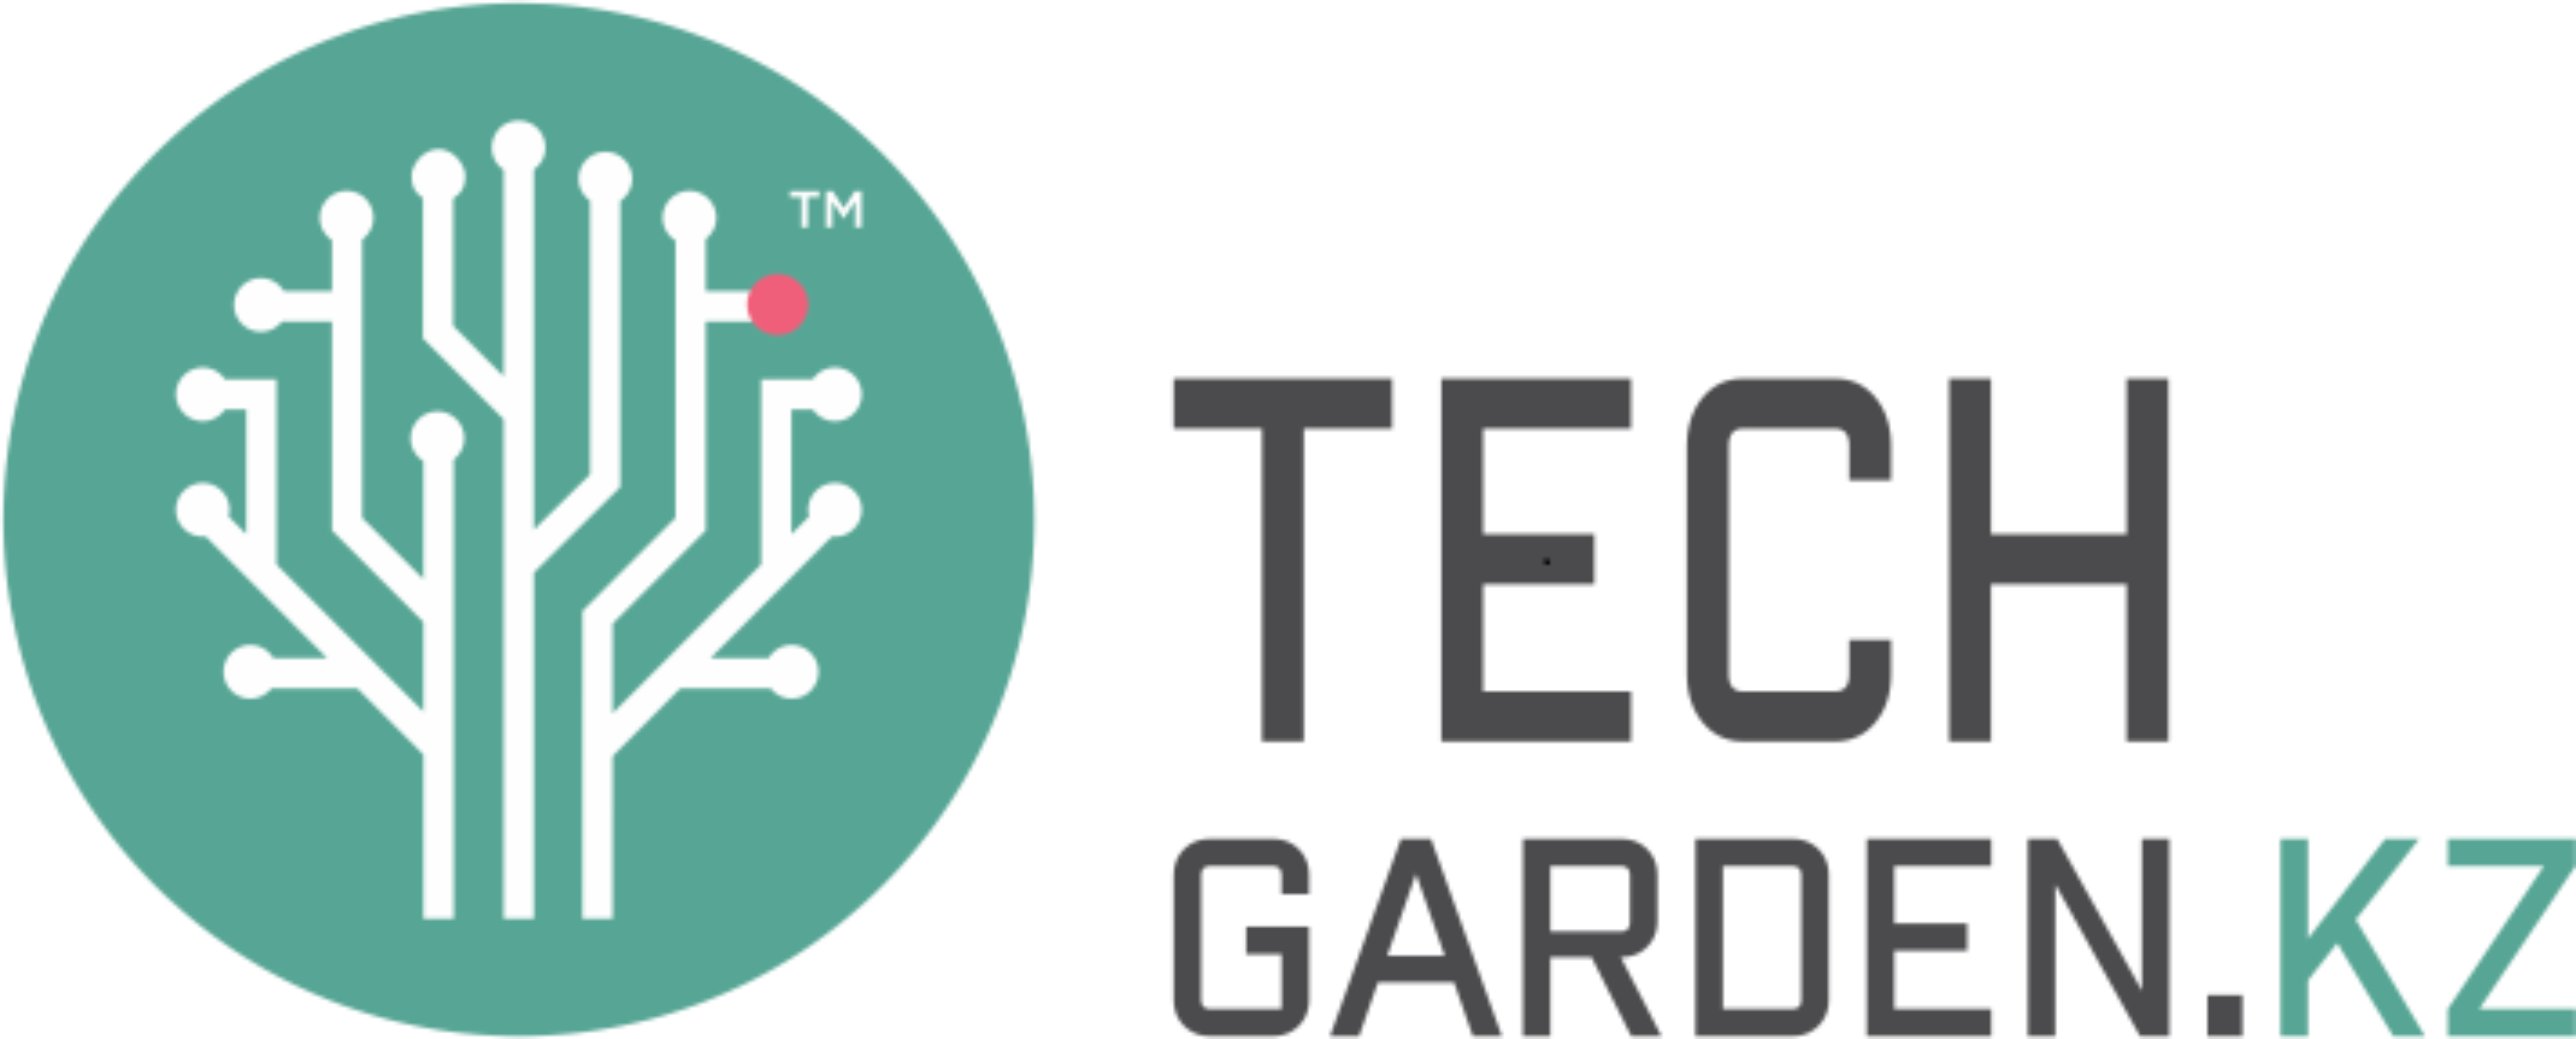 Сад кз. Парк инновационных технологий» Tech Garden. «Парк инновационных технологий» лого. Tech лого. Логотипы технологий и инноваций.